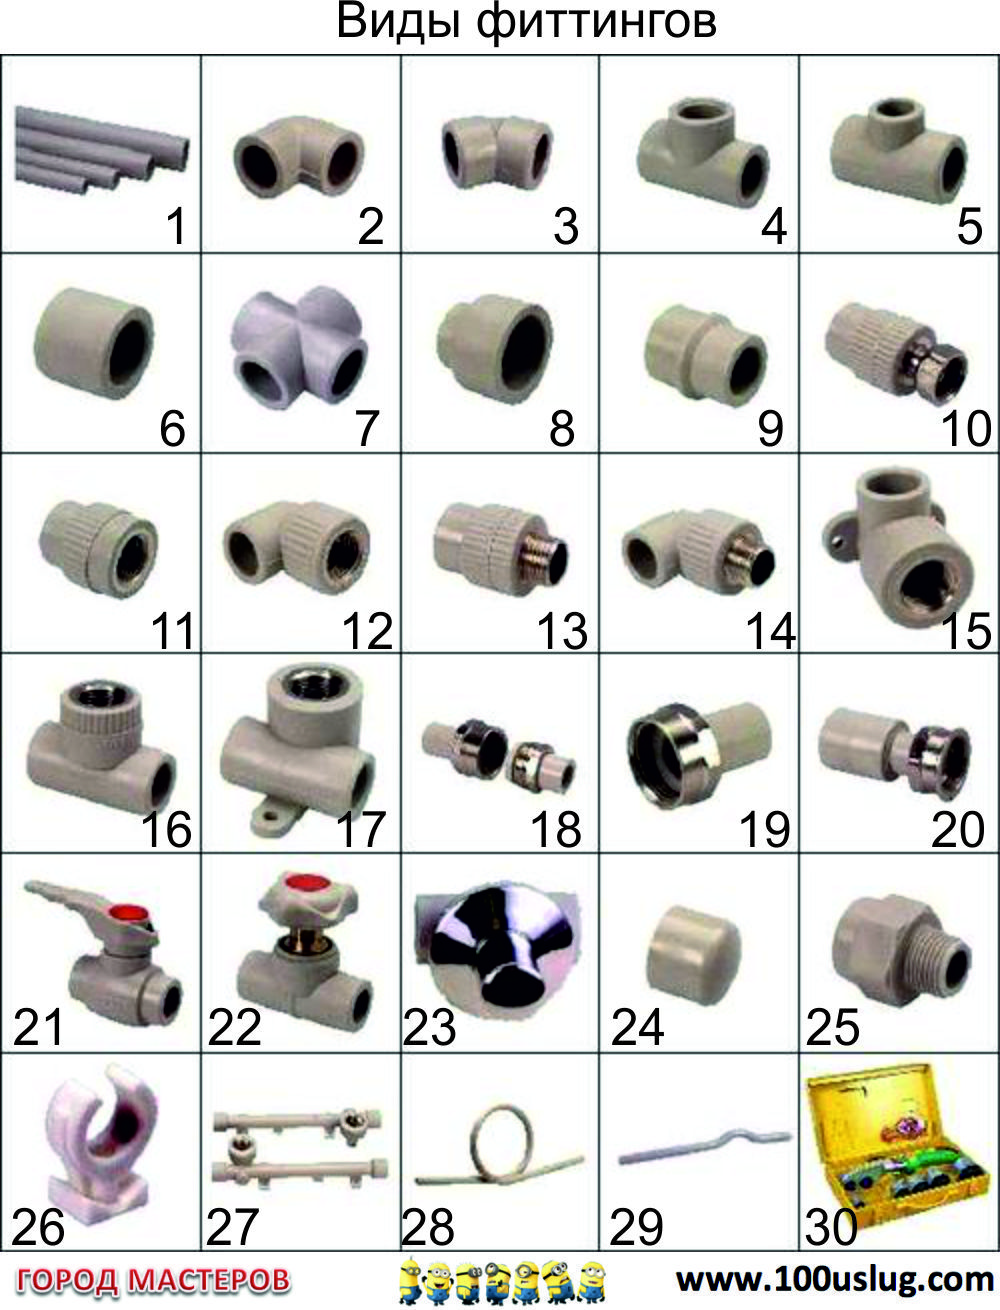 фитинги для пластиковых труб каталог фото